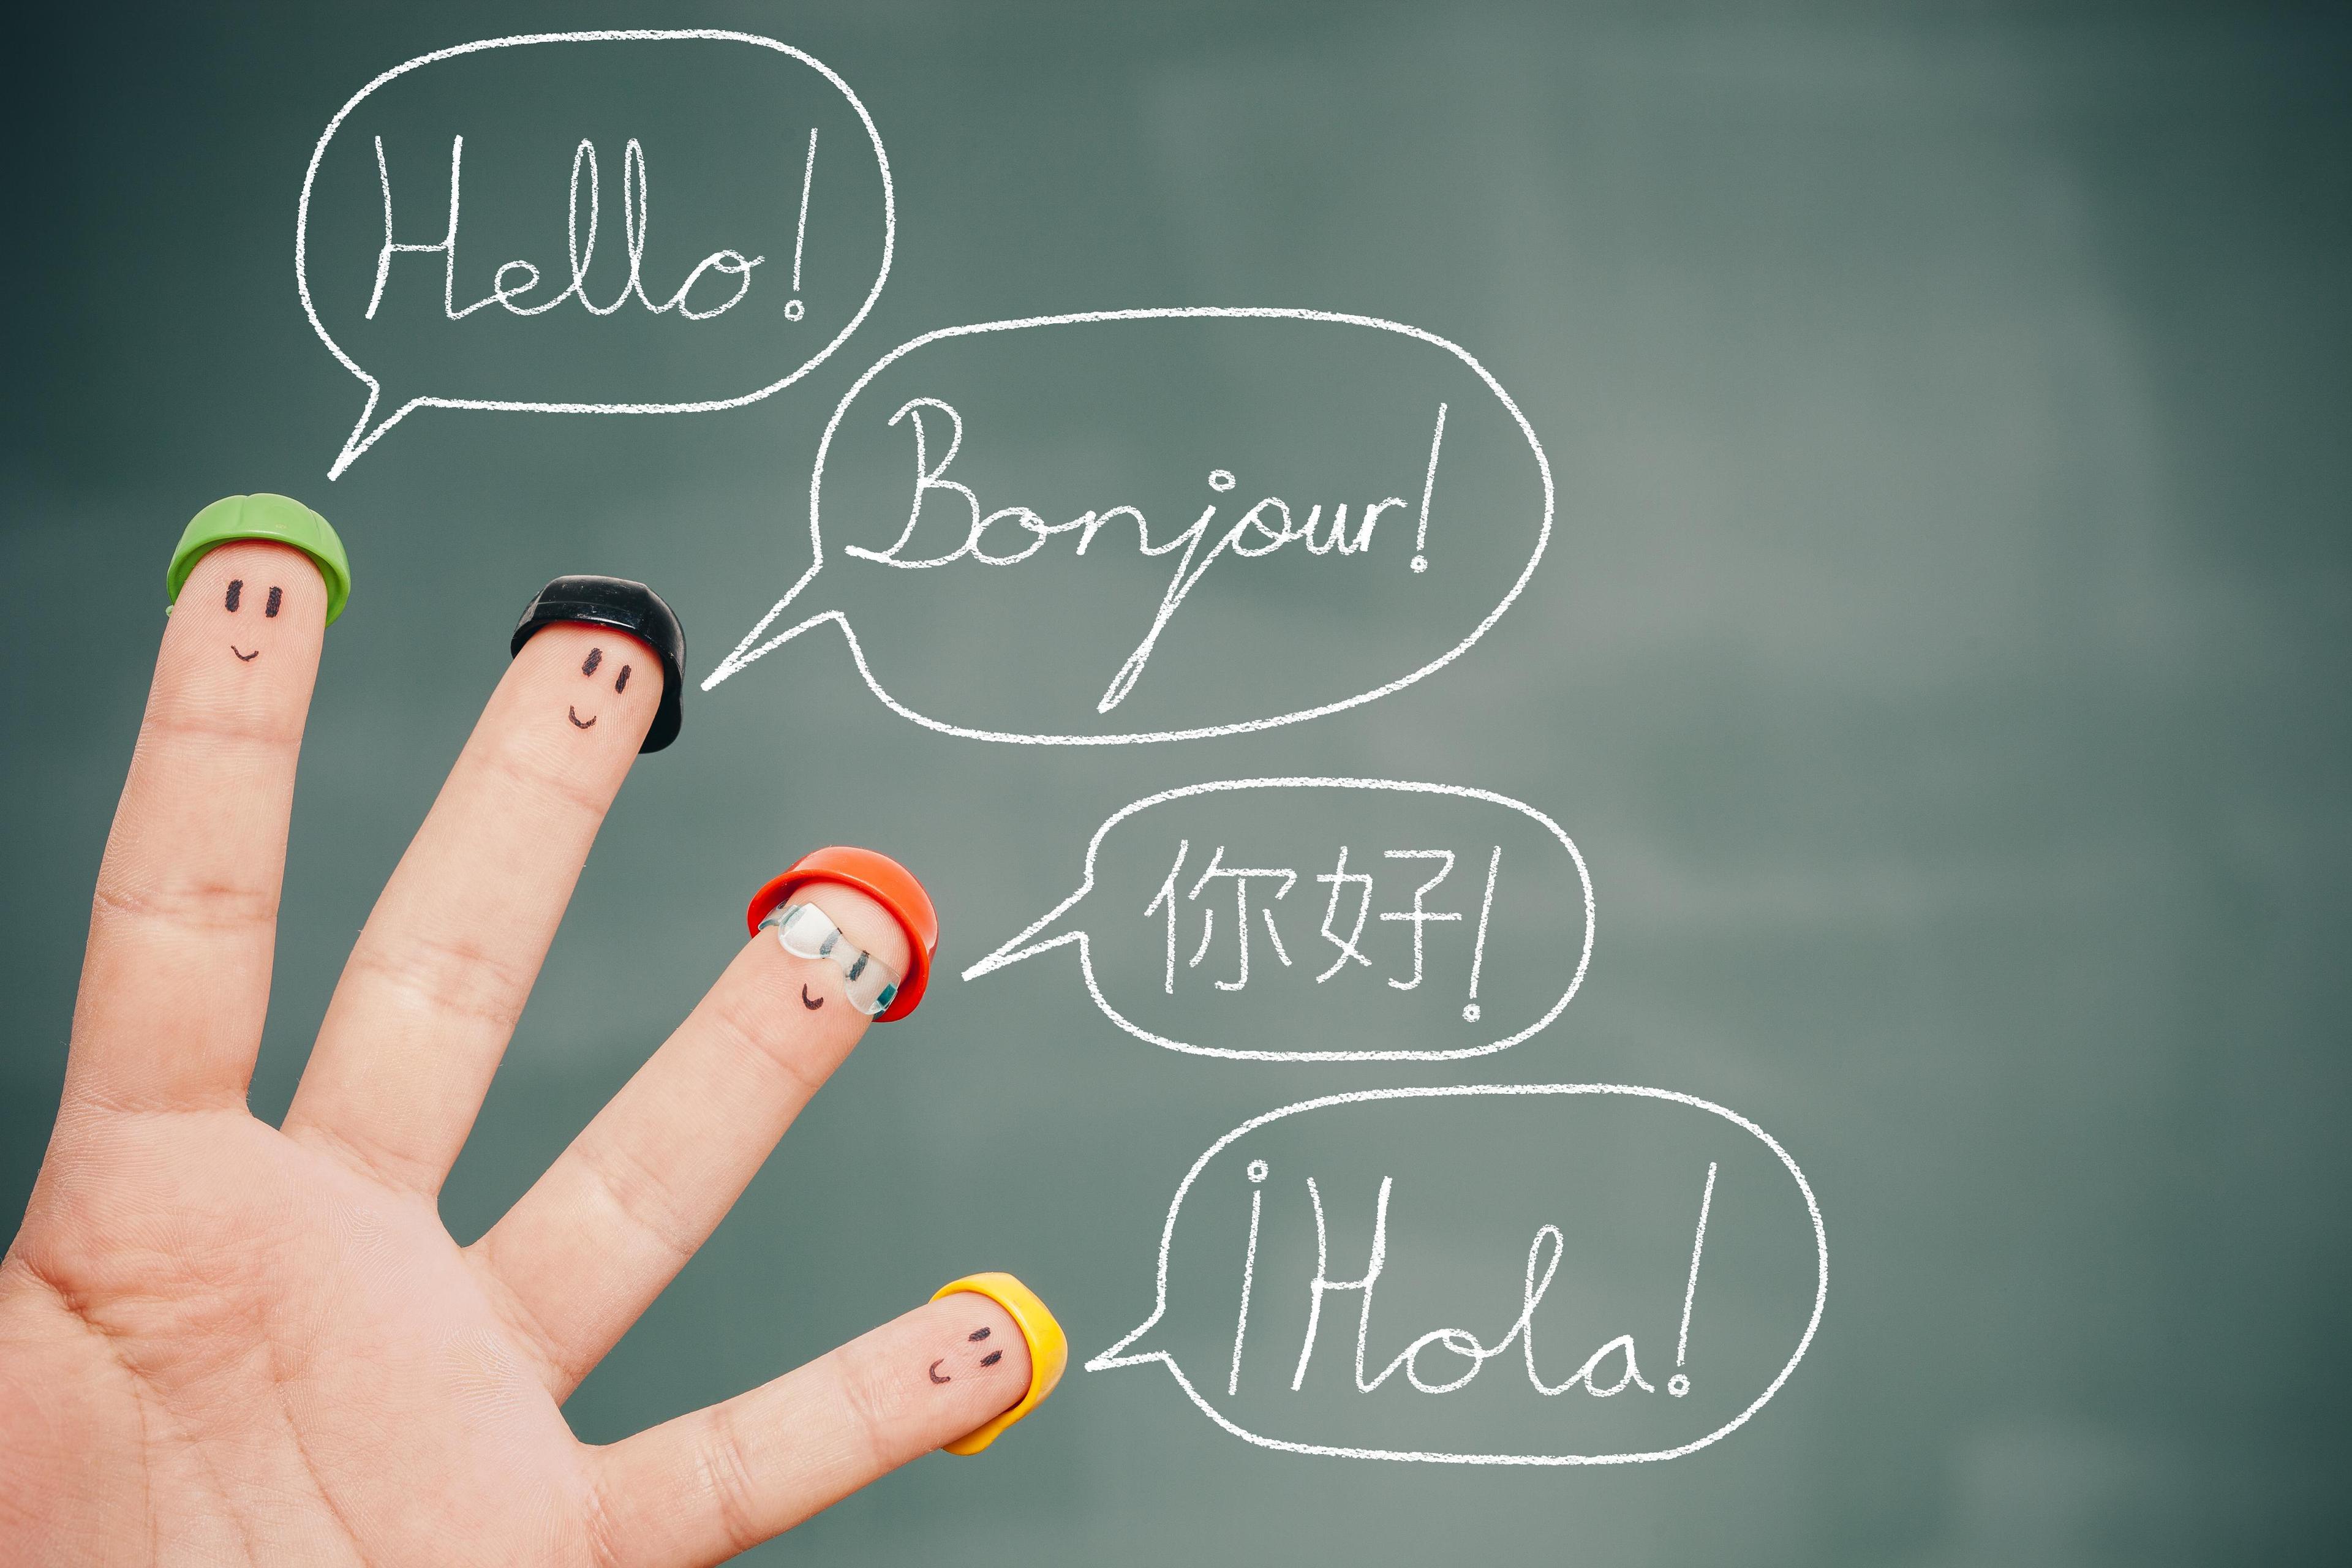 أهم لغات يجب عليك تعلمها في 2017 - اهم اللغات في العالم لعام 2017